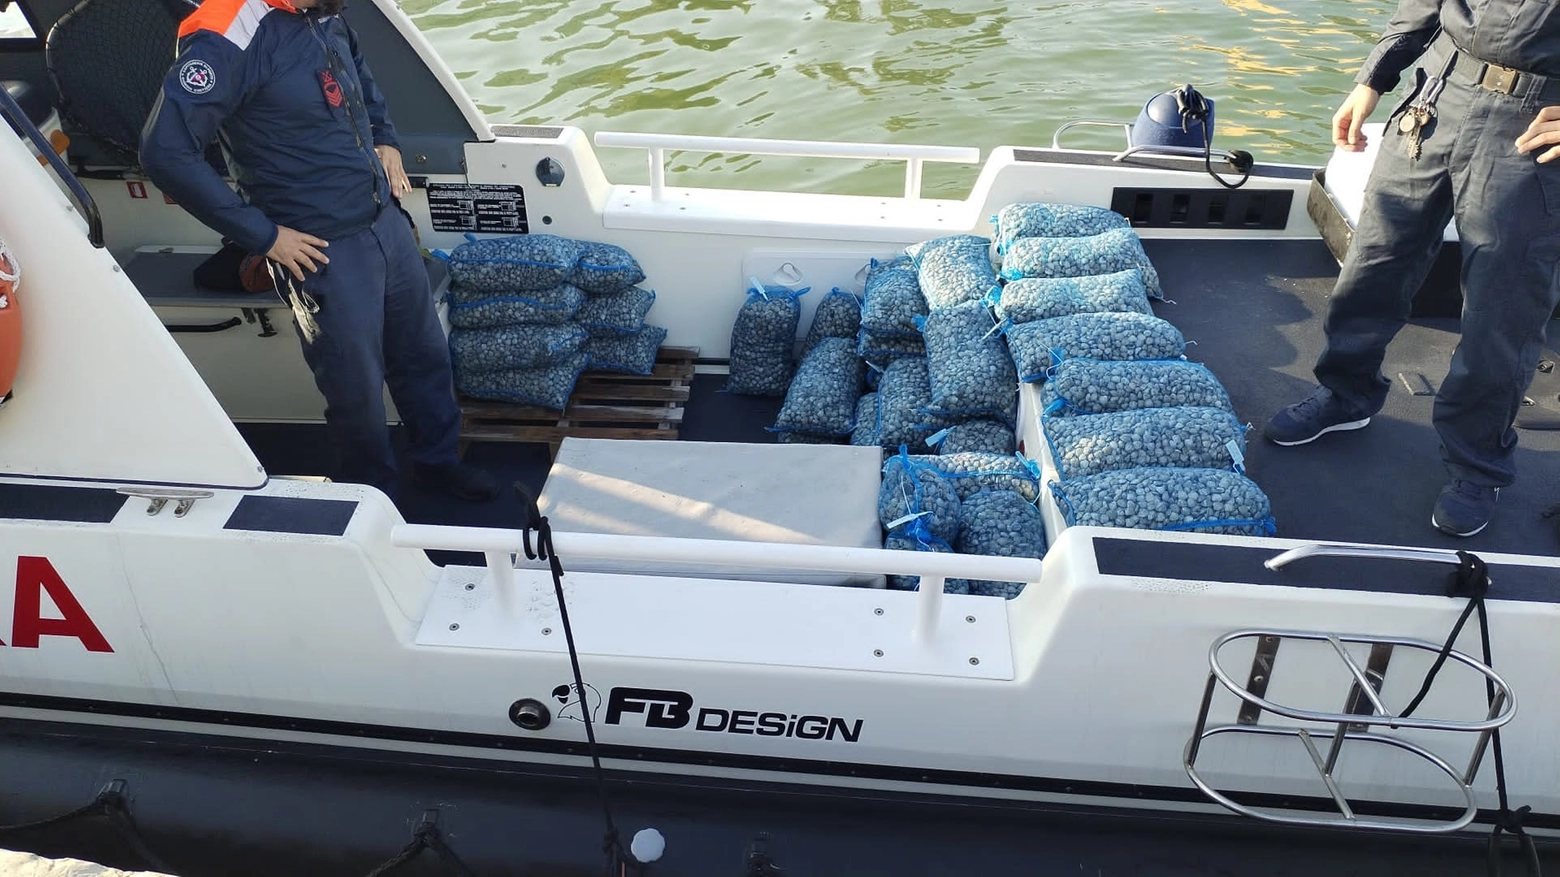 La Guardia costiera ha sorpreso un’imbarcazione raccogliere quintali di molluschi a meno di 300 metri da riva